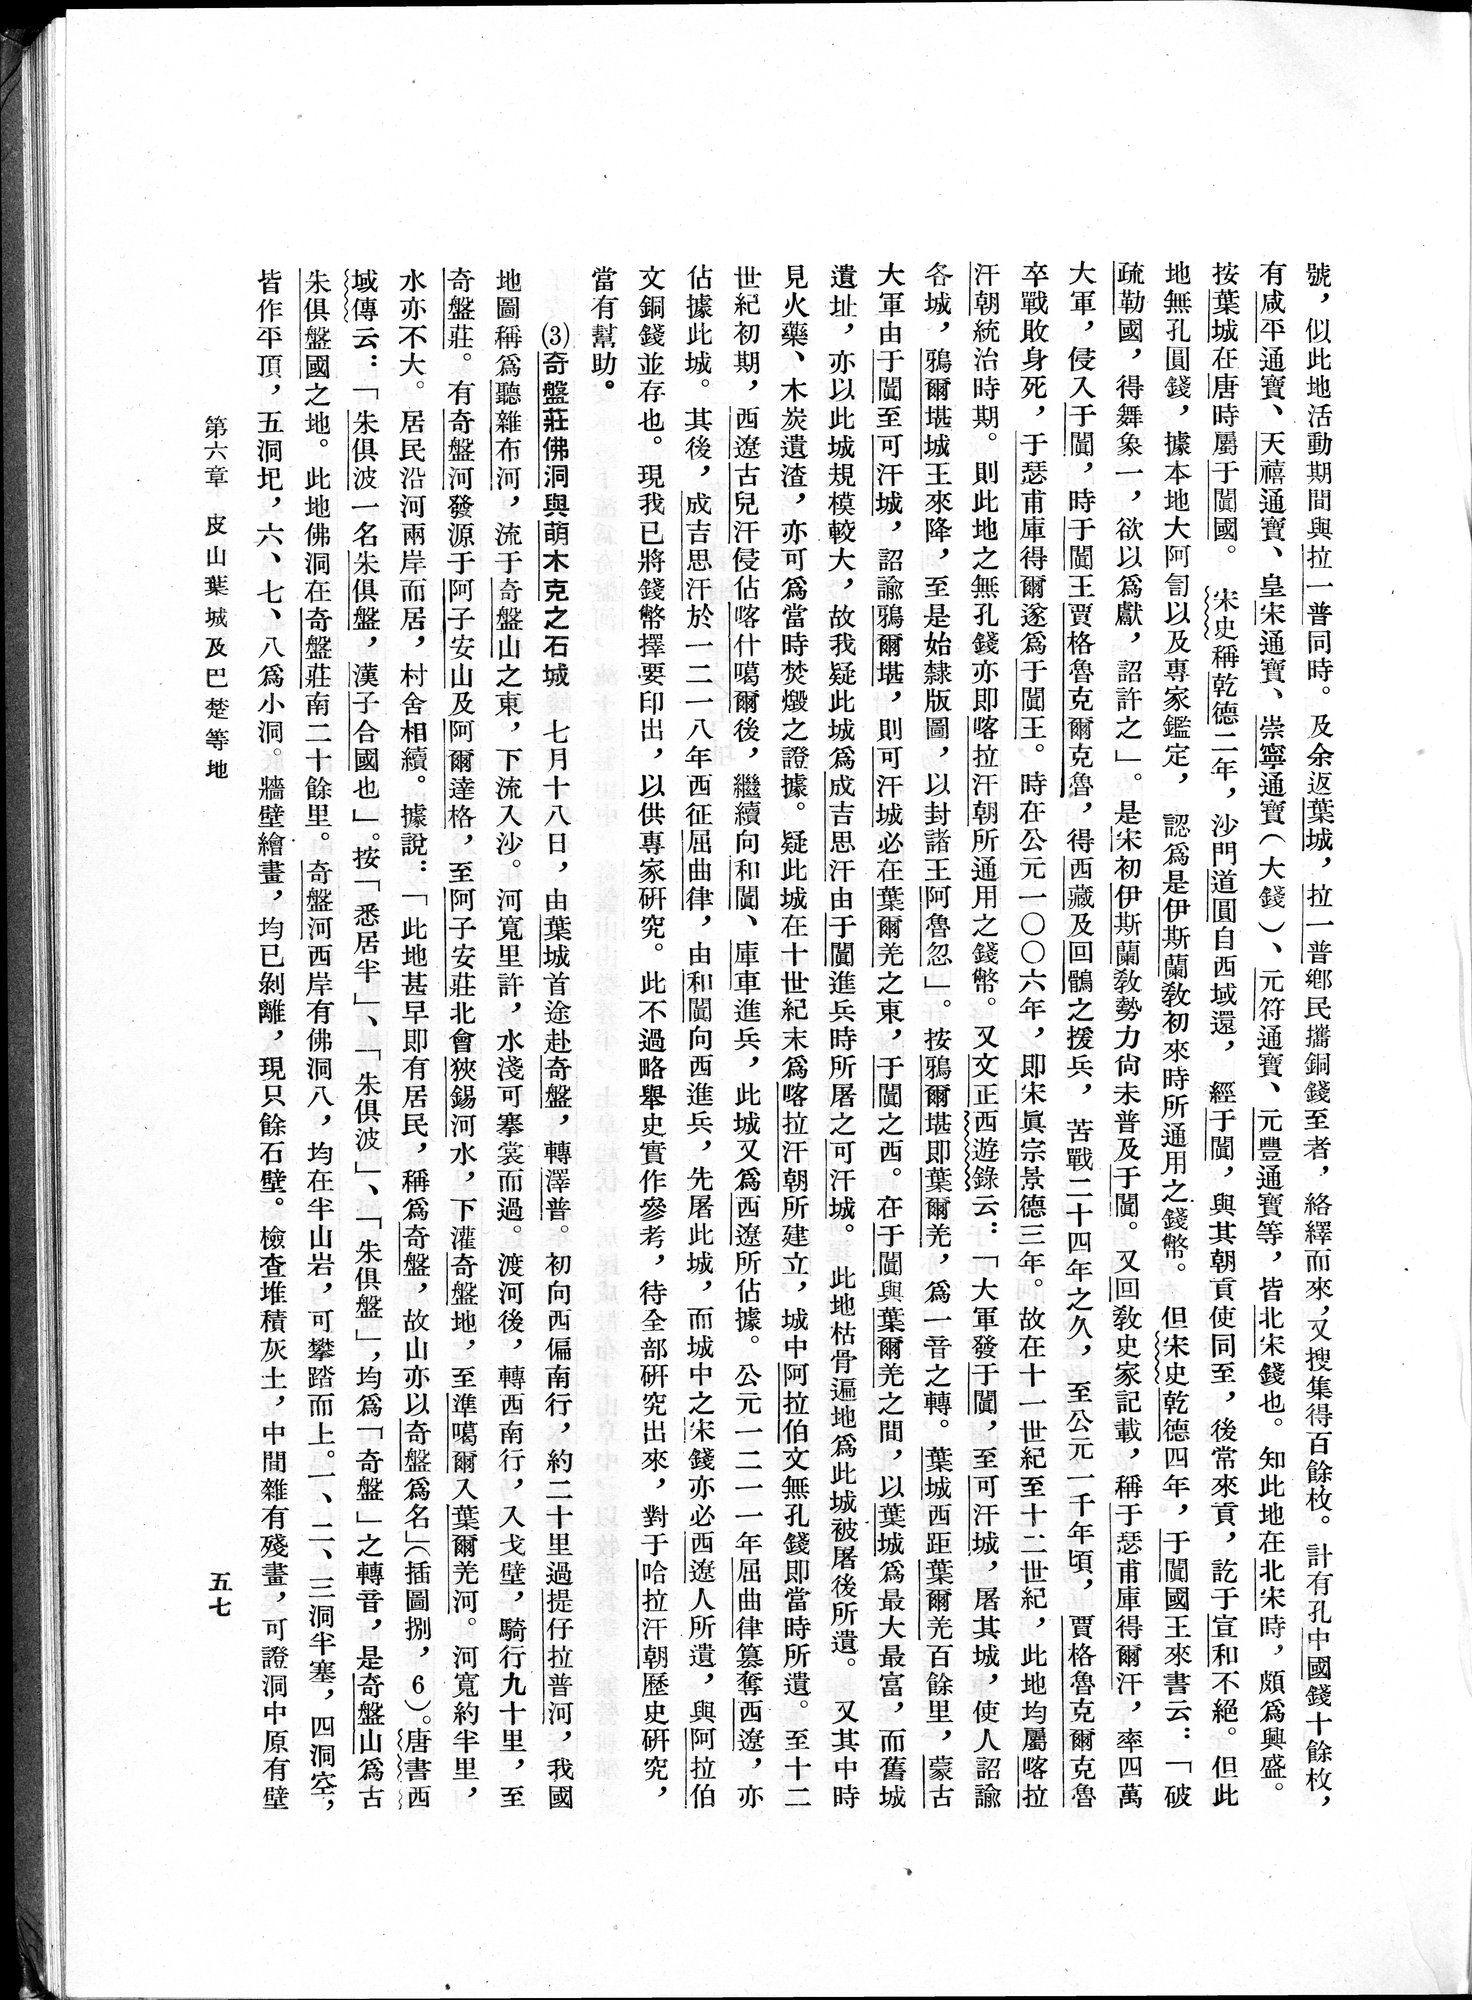 塔里木盆地考古記 : vol.1 / 81 ページ（白黒高解像度画像）